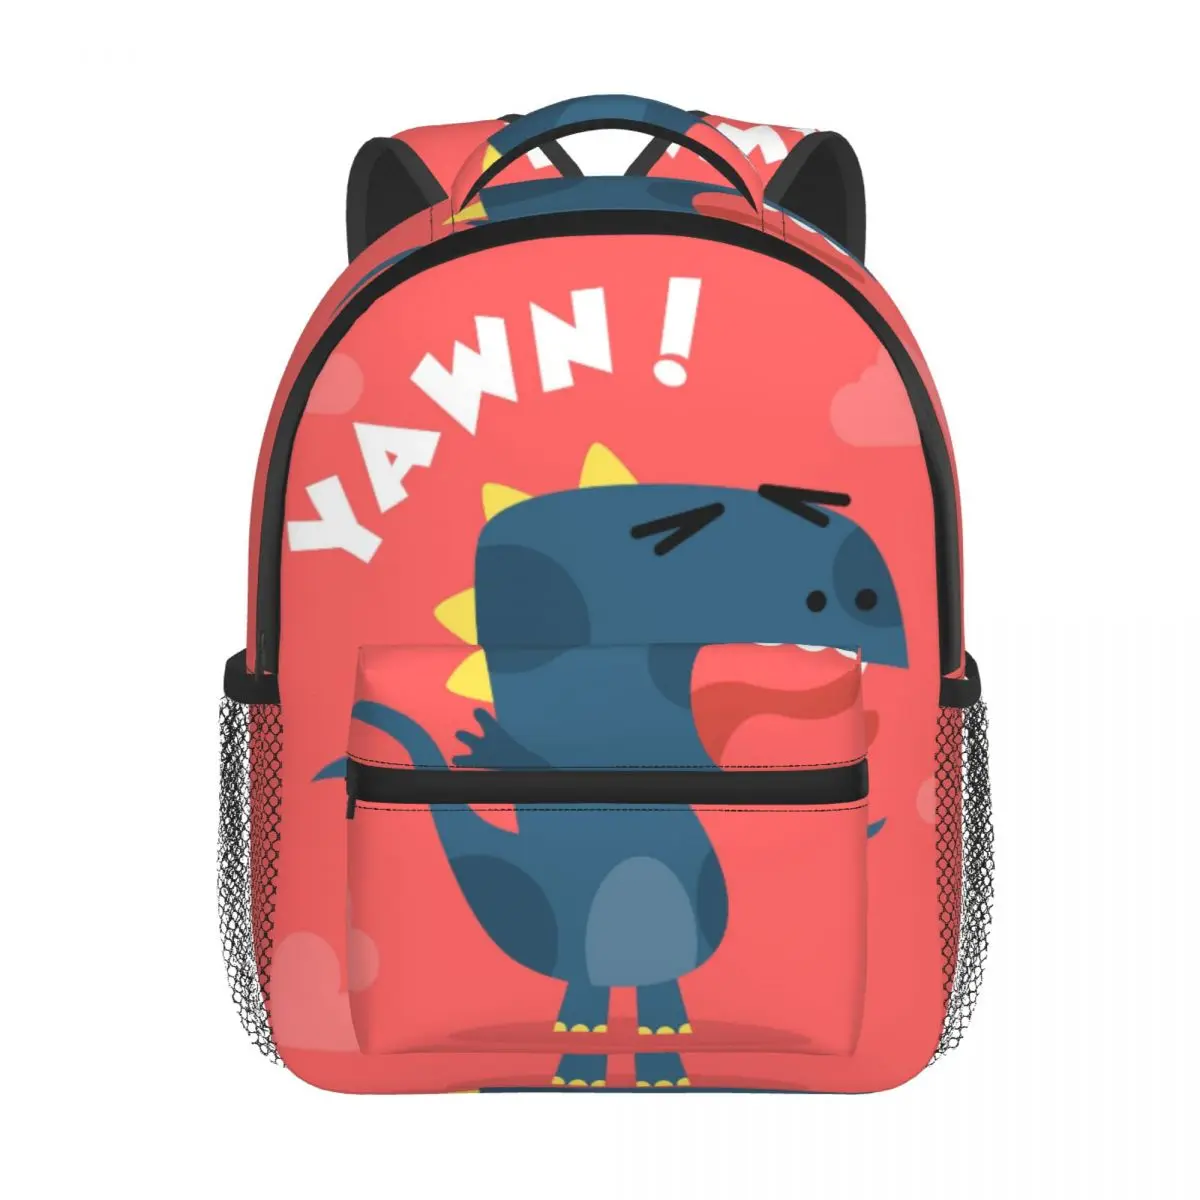 Cute Dinosaur Kids Backpack Toddler School Bag Kindergarten Mochila for Boys Girls 2-5 Years